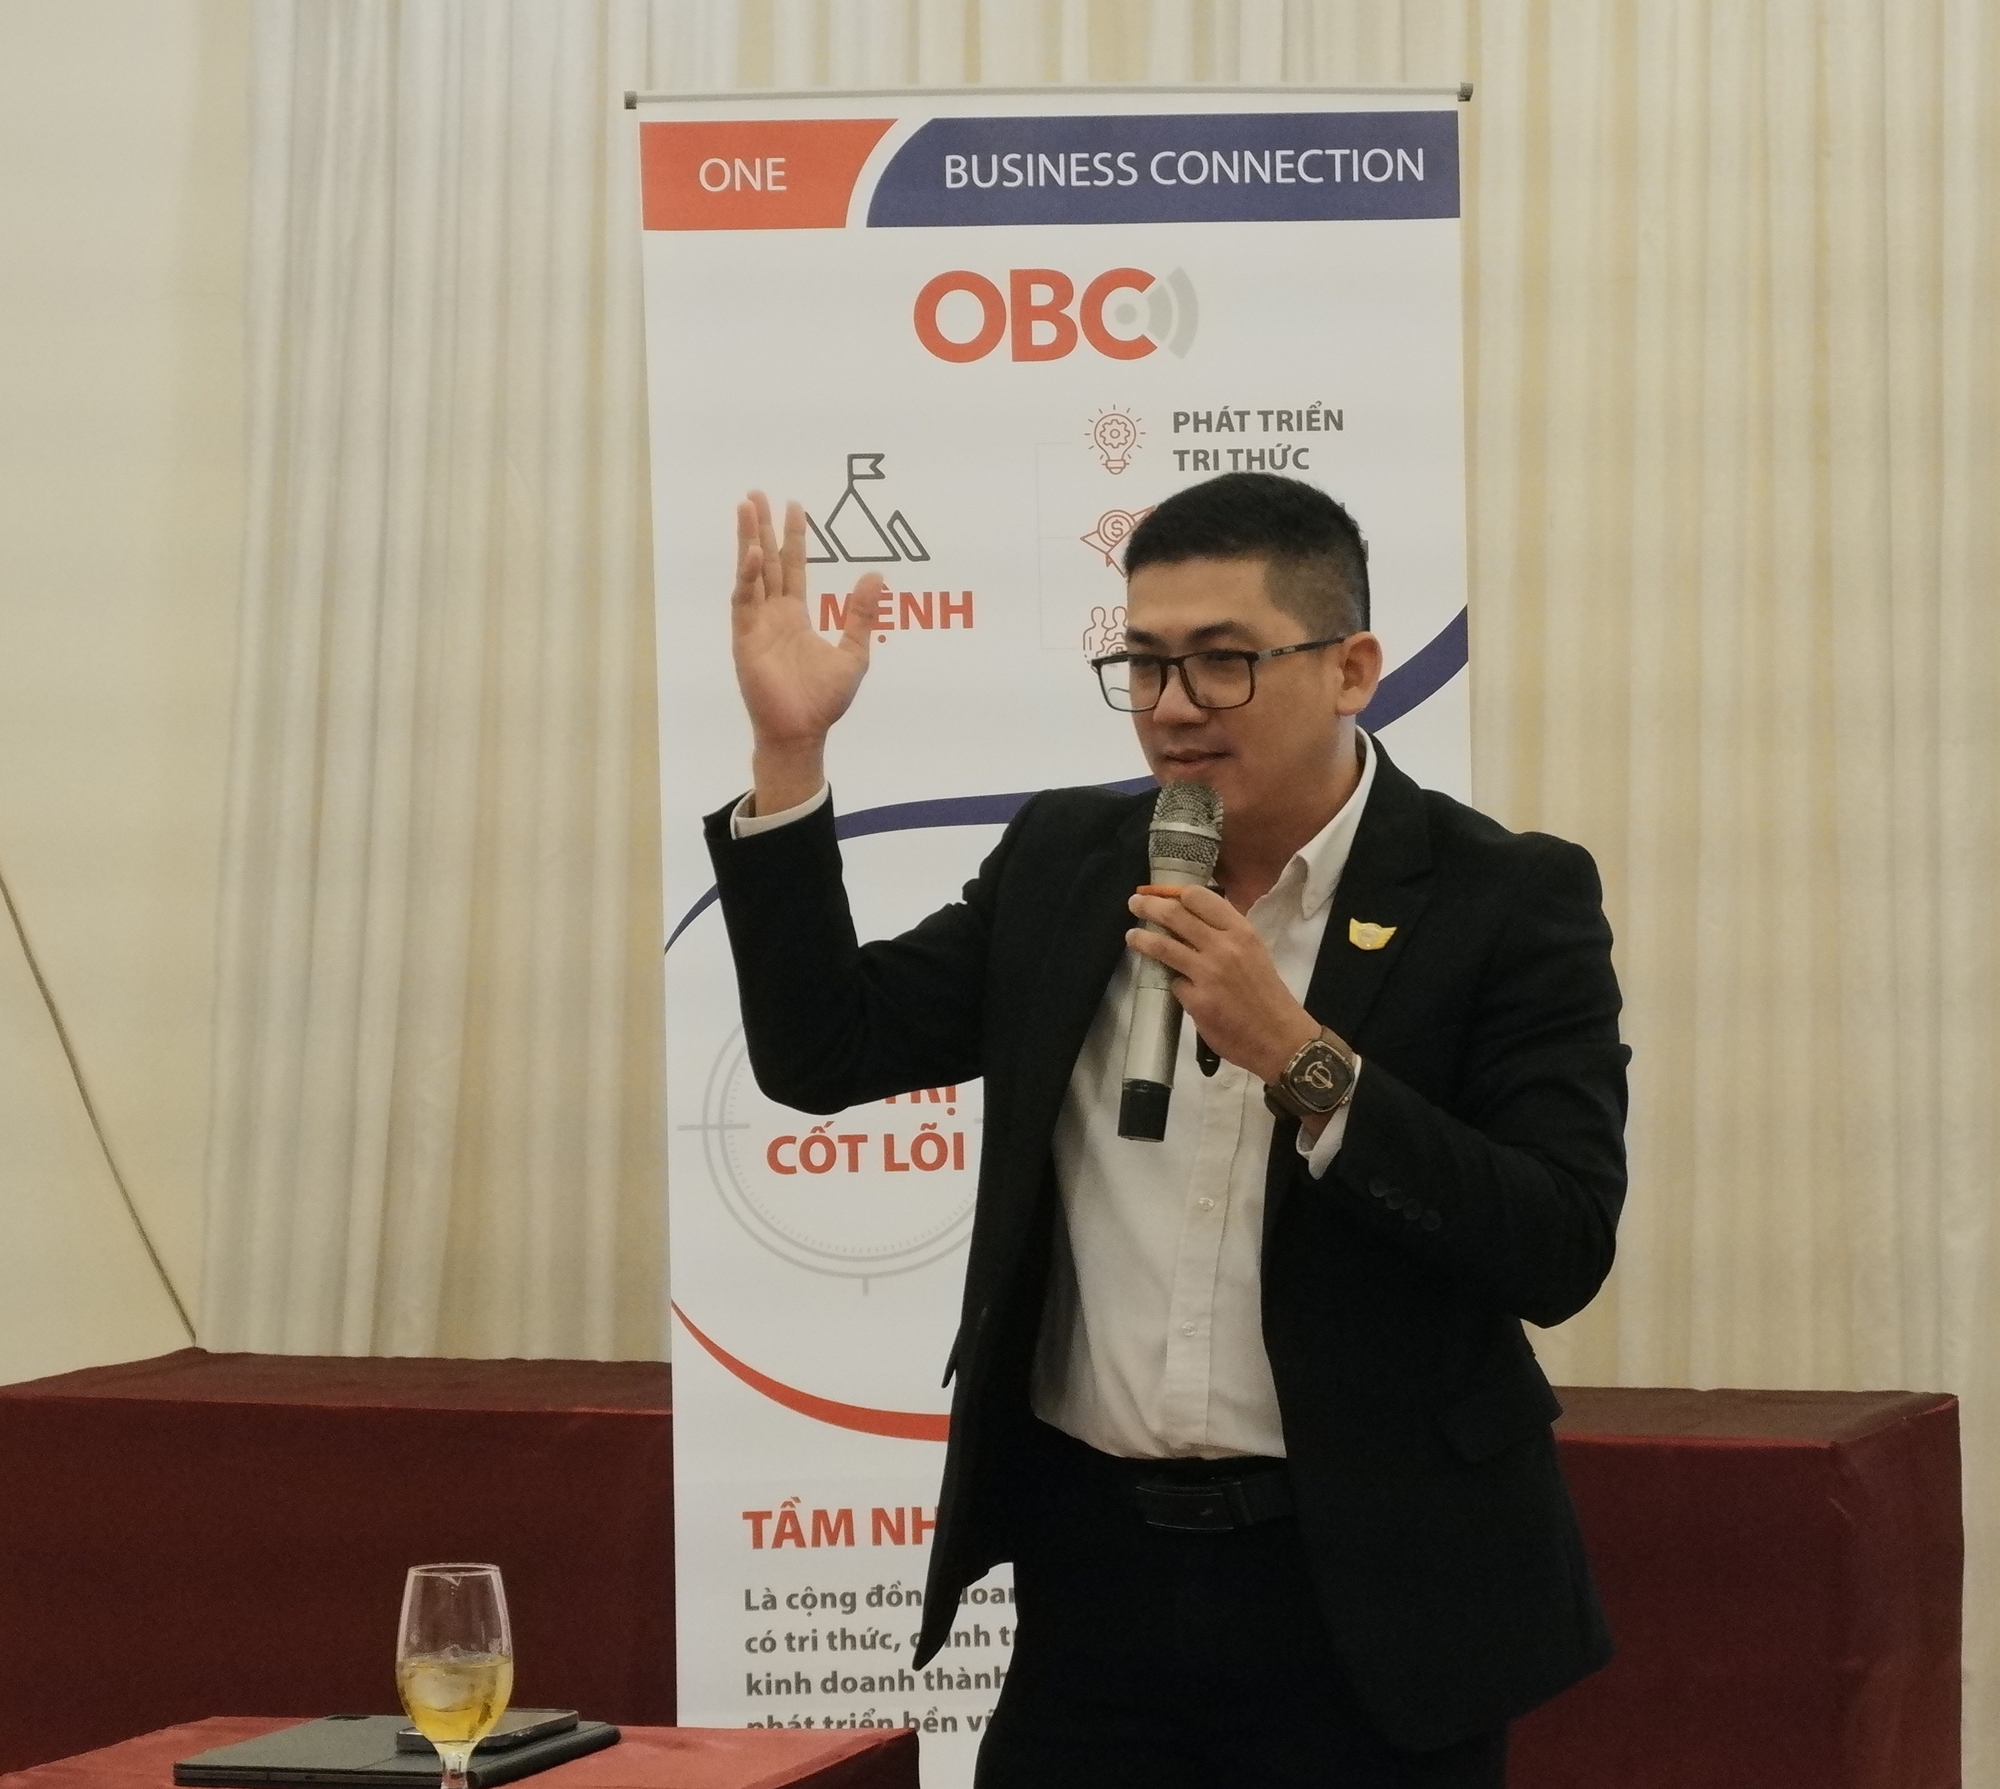 Tham gia cộng đồng doanh nghiệp OBC Bình Thuận, doanh nghiệp được hưởng lợi gì? - Ảnh 1.